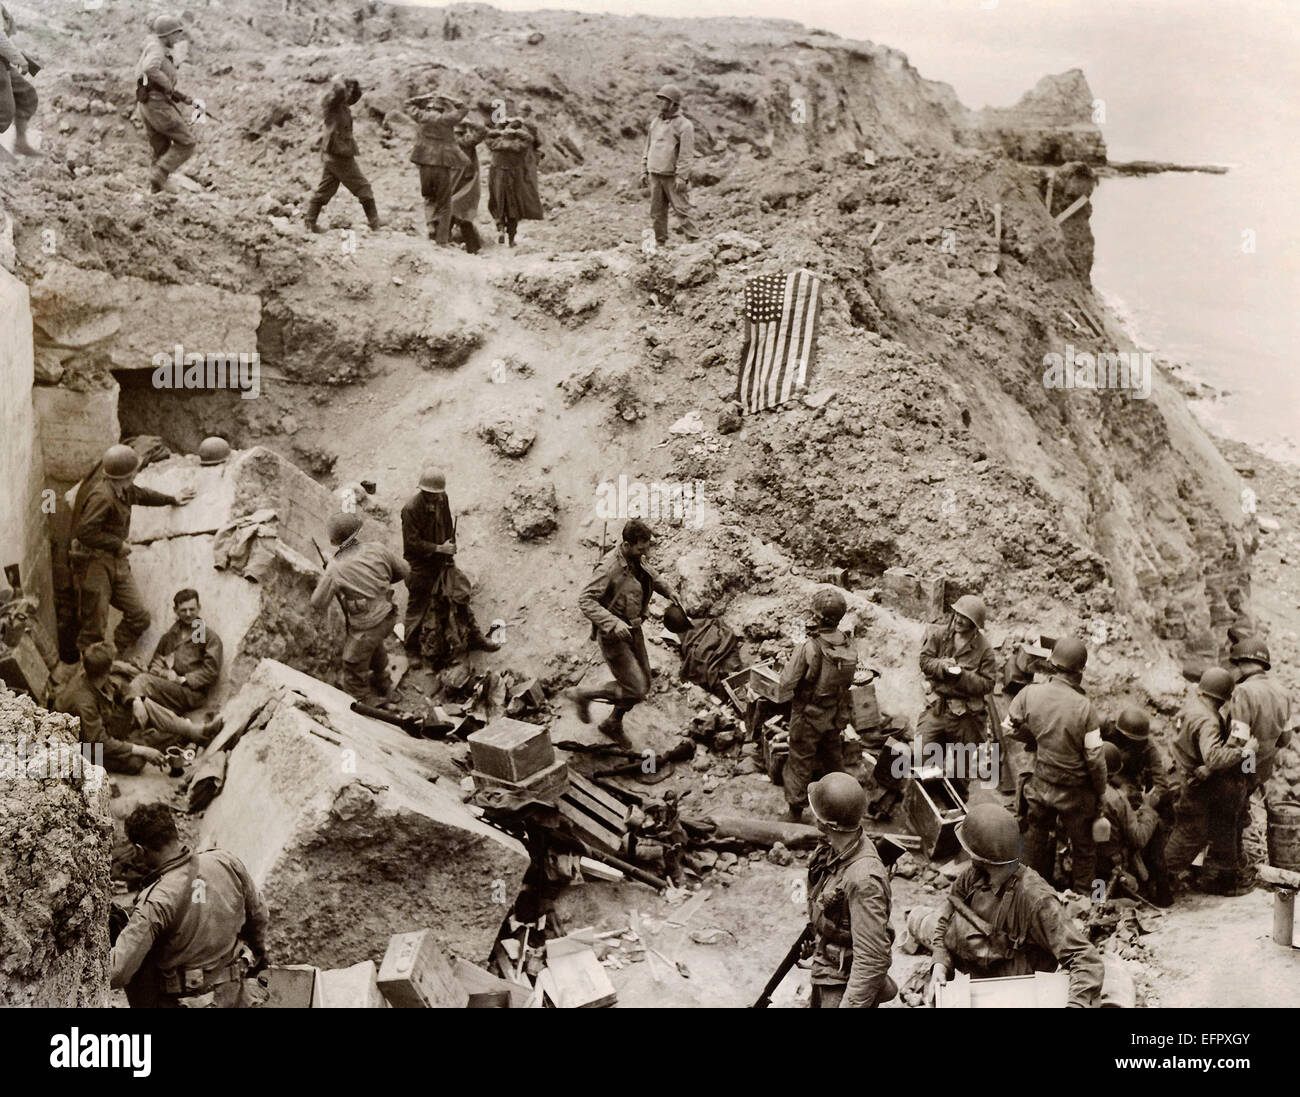 Les soldats allemands sont capturés à la suite de l'assaut sur les falaises de la Pointe du Hoc par les Rangers de l'armée américaine lors de l'invasion du Jour J 8 juin 1944 à Cricqueville en Bessin, France Banque D'Images